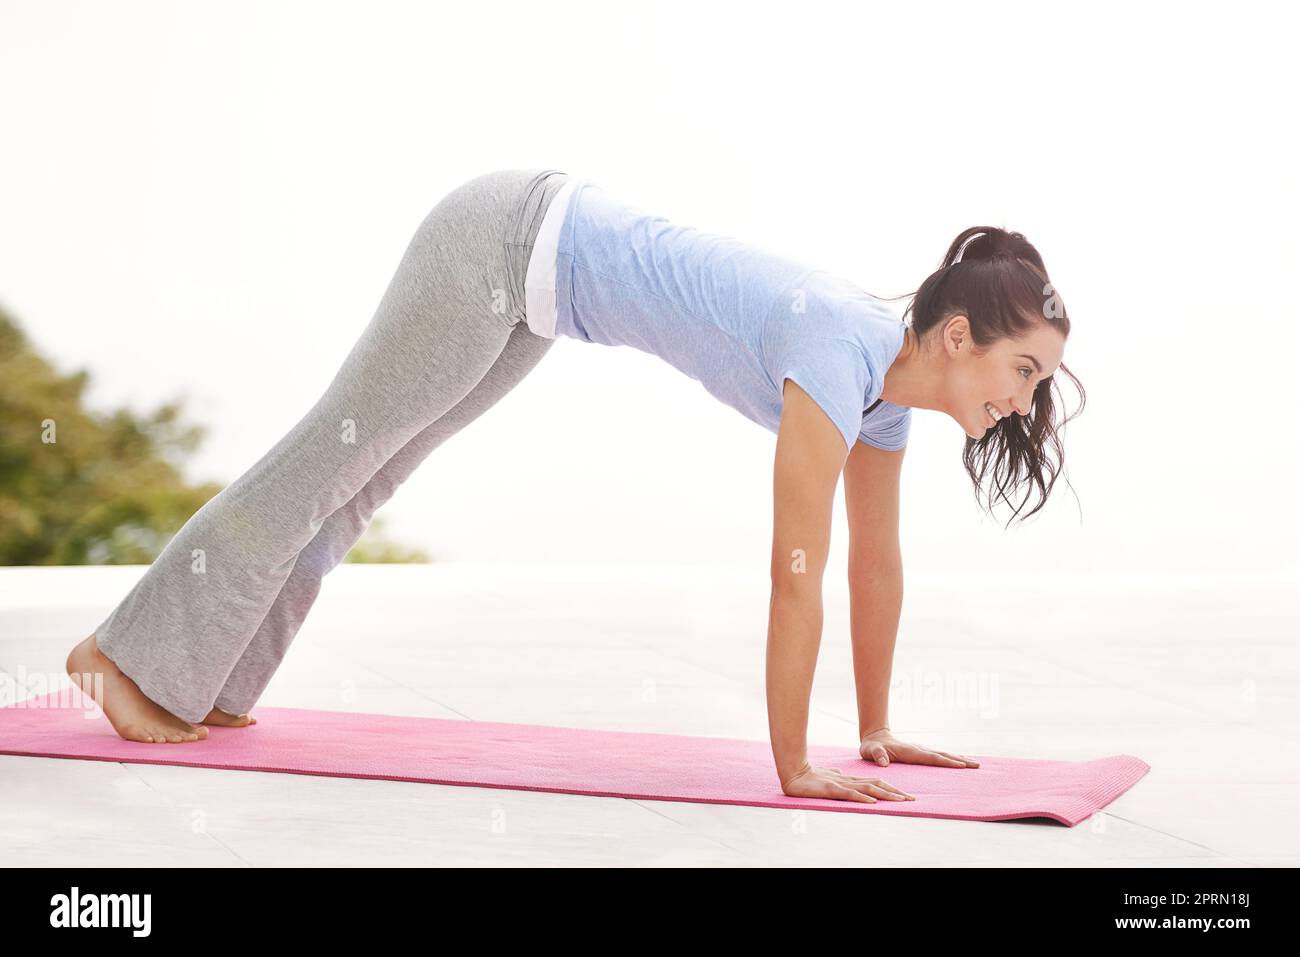 Venez vous détendre en prenant un peu de yoga. Prise de vue en longueur d'une jeune femme faisant du yoga à l'extérieur. Banque D'Images